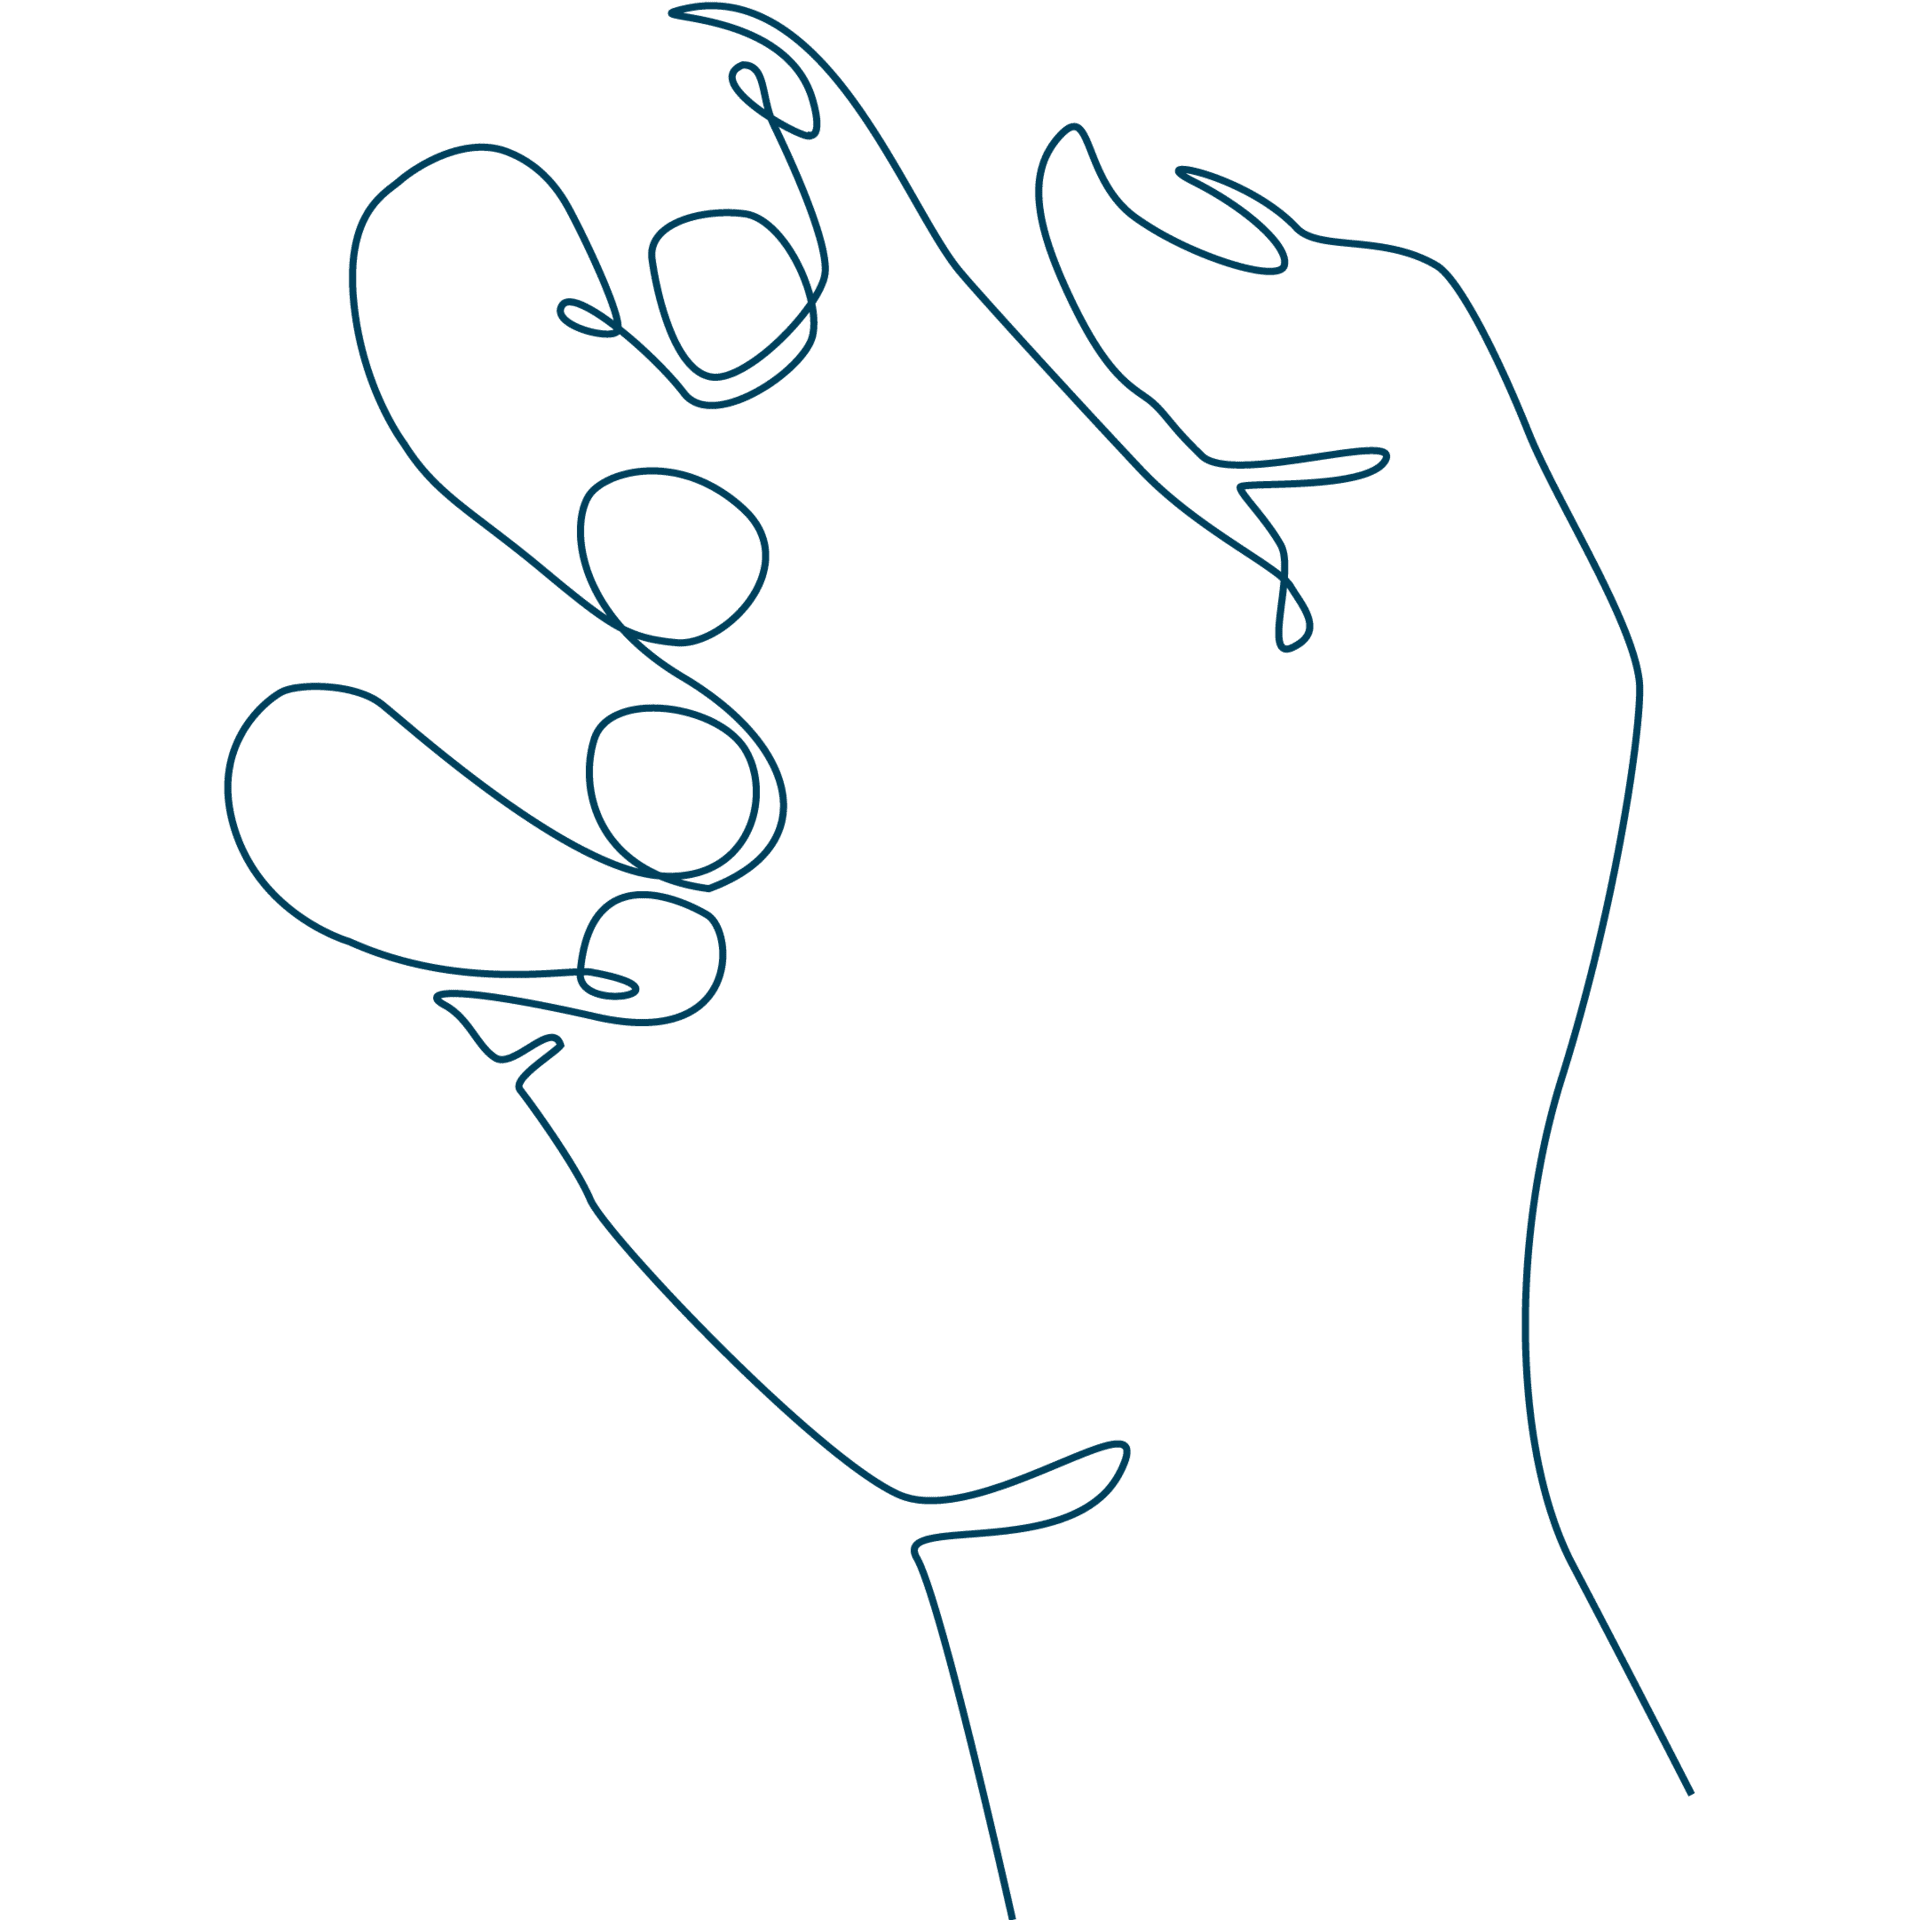 Diese Line-Art-Zeichnung voN Fingern mit Fingernägeln bildet den Link zu den Sixtus Nagel-Produkten.